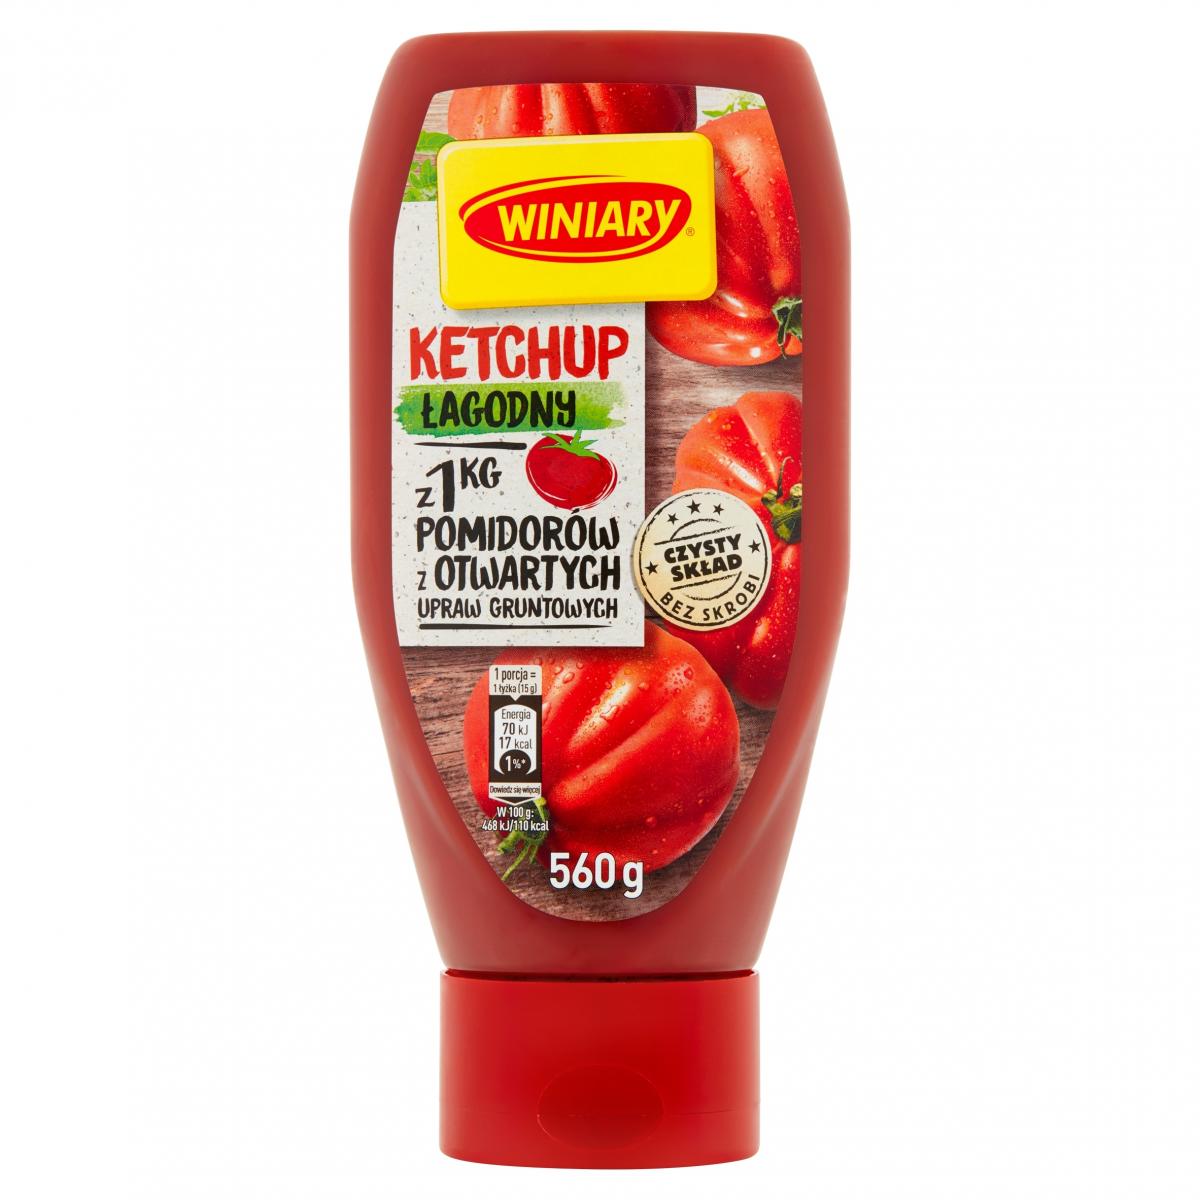 ketchup łagodny wyniary z dobrym składem